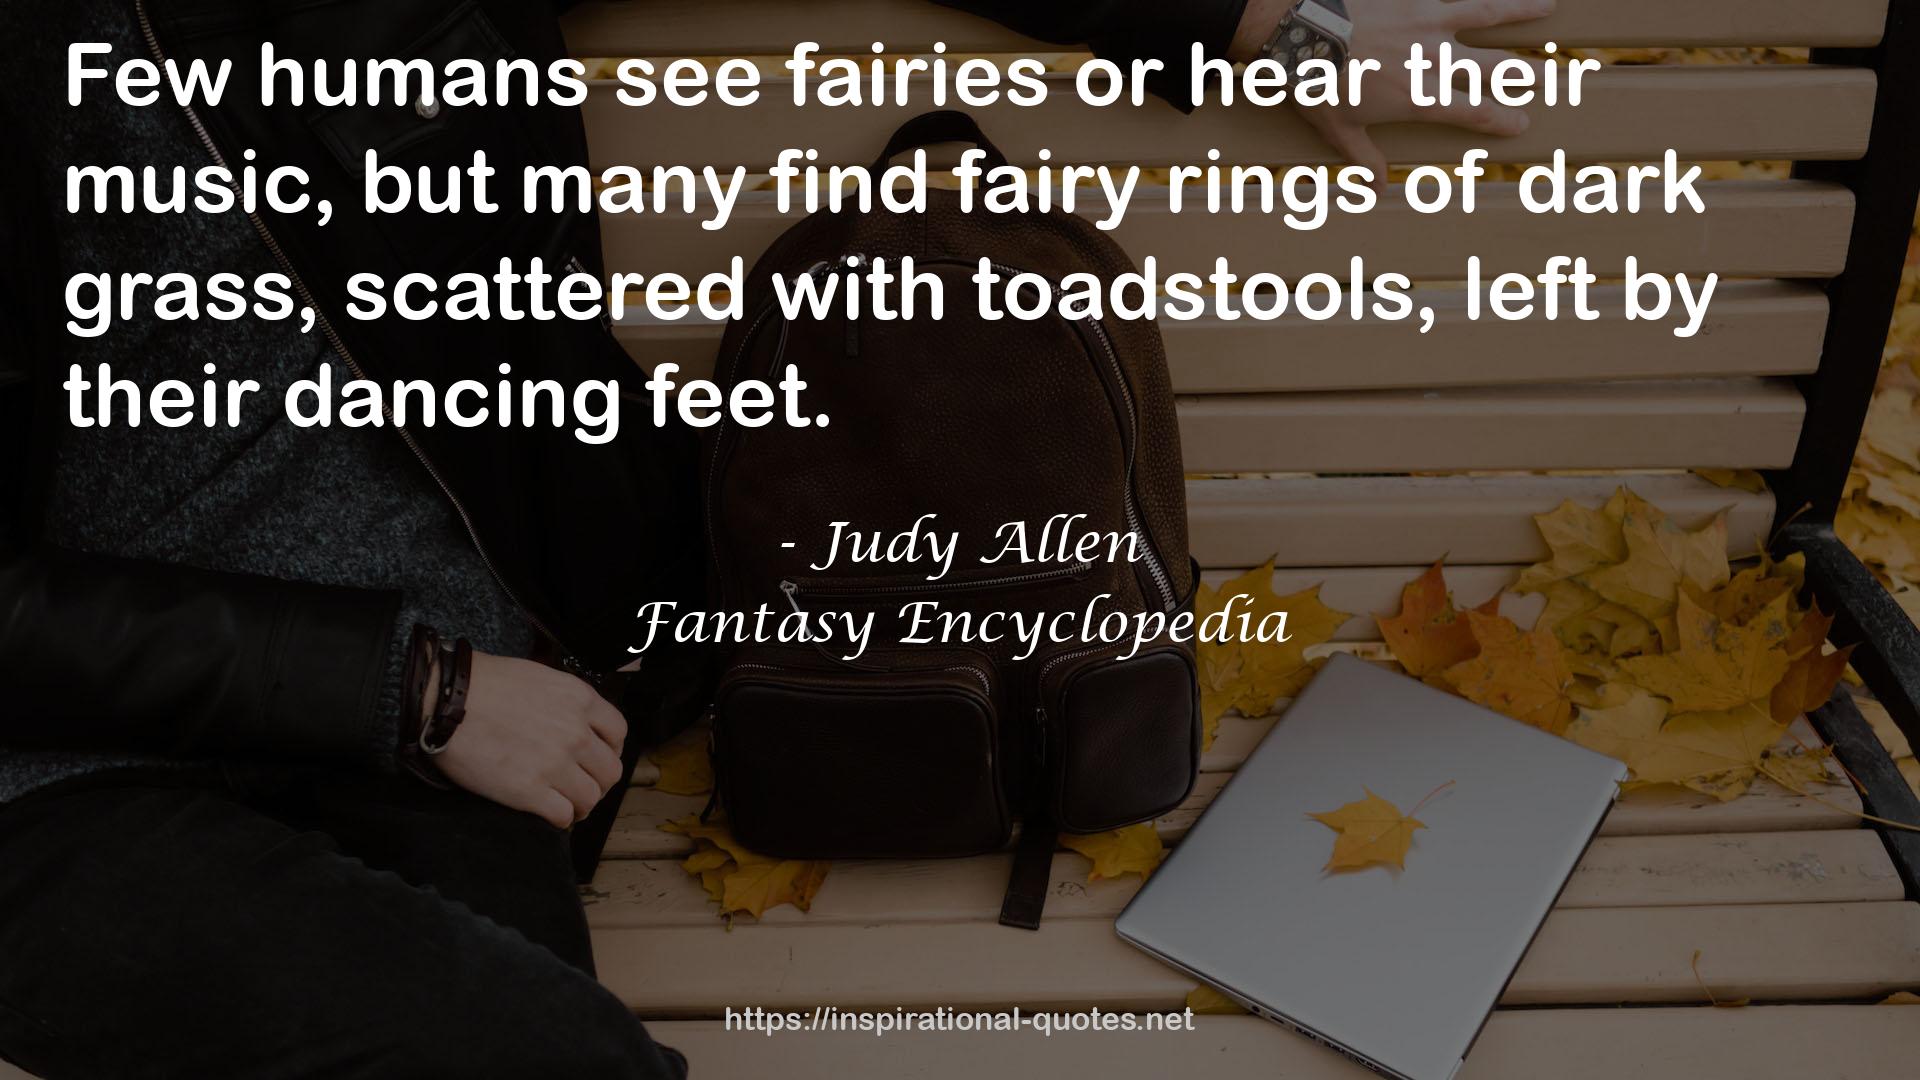 Fantasy Encyclopedia QUOTES